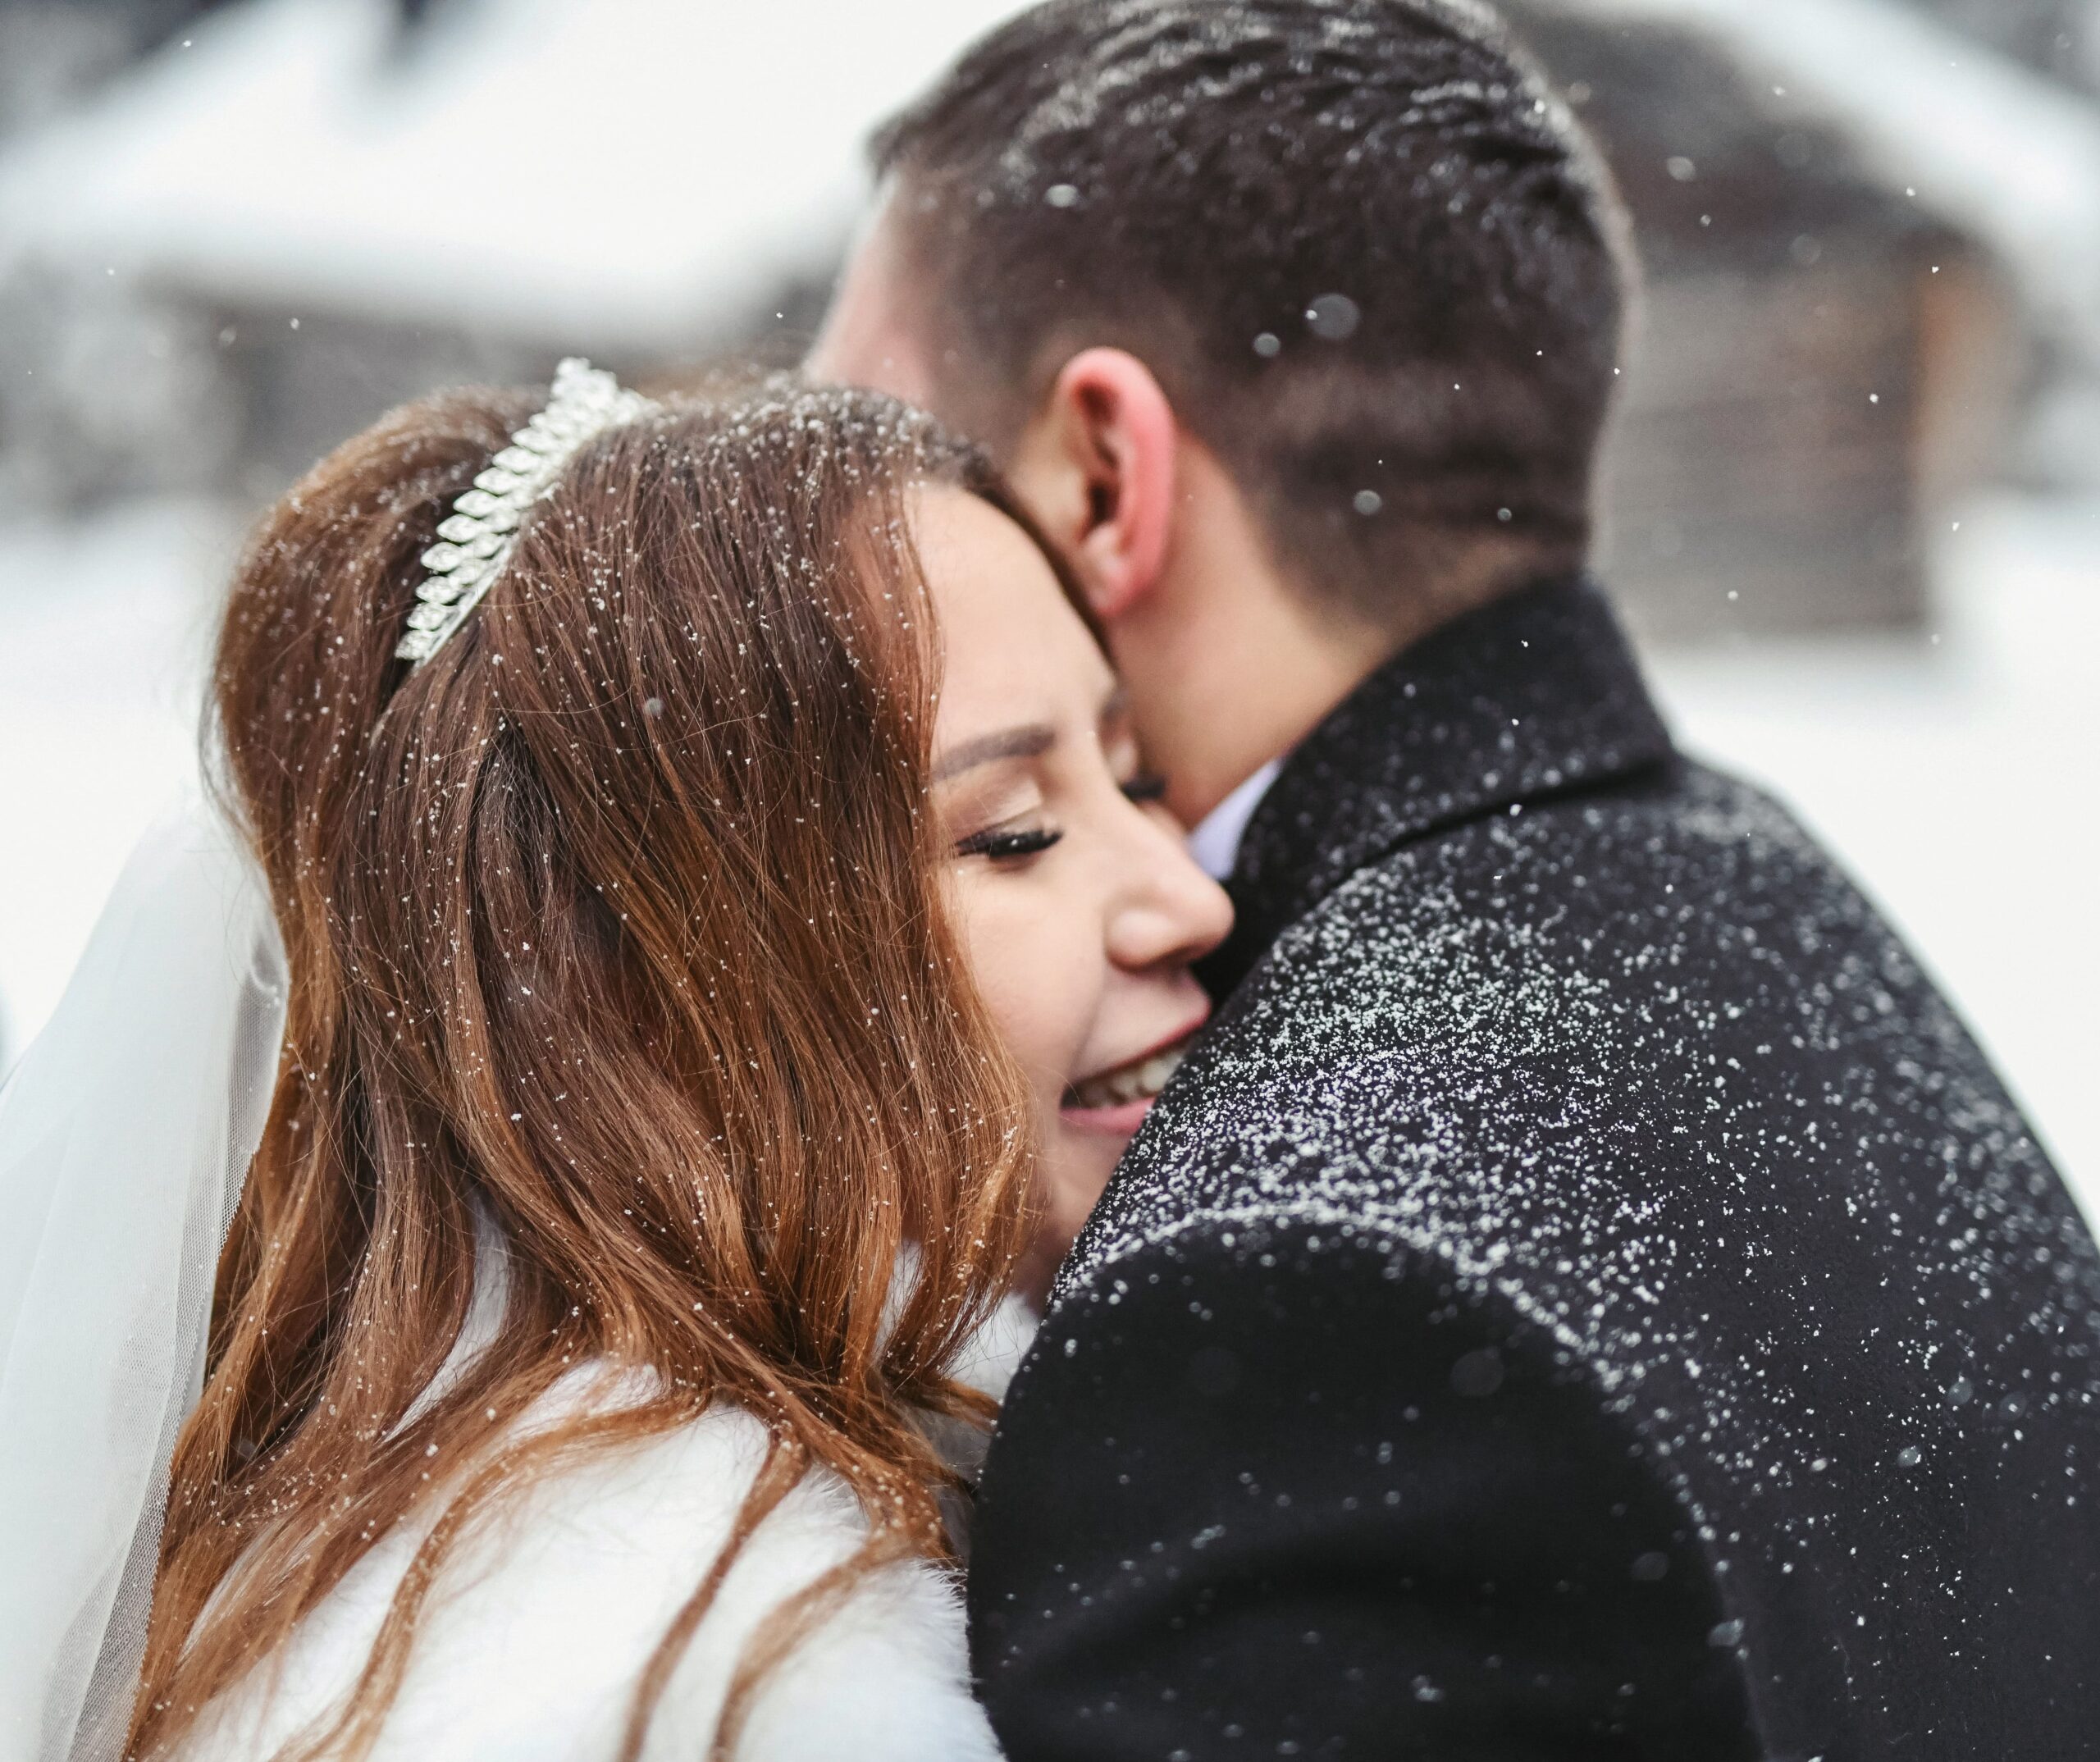 Sposarsi a Natale: 5 ottimi motivi per farlo